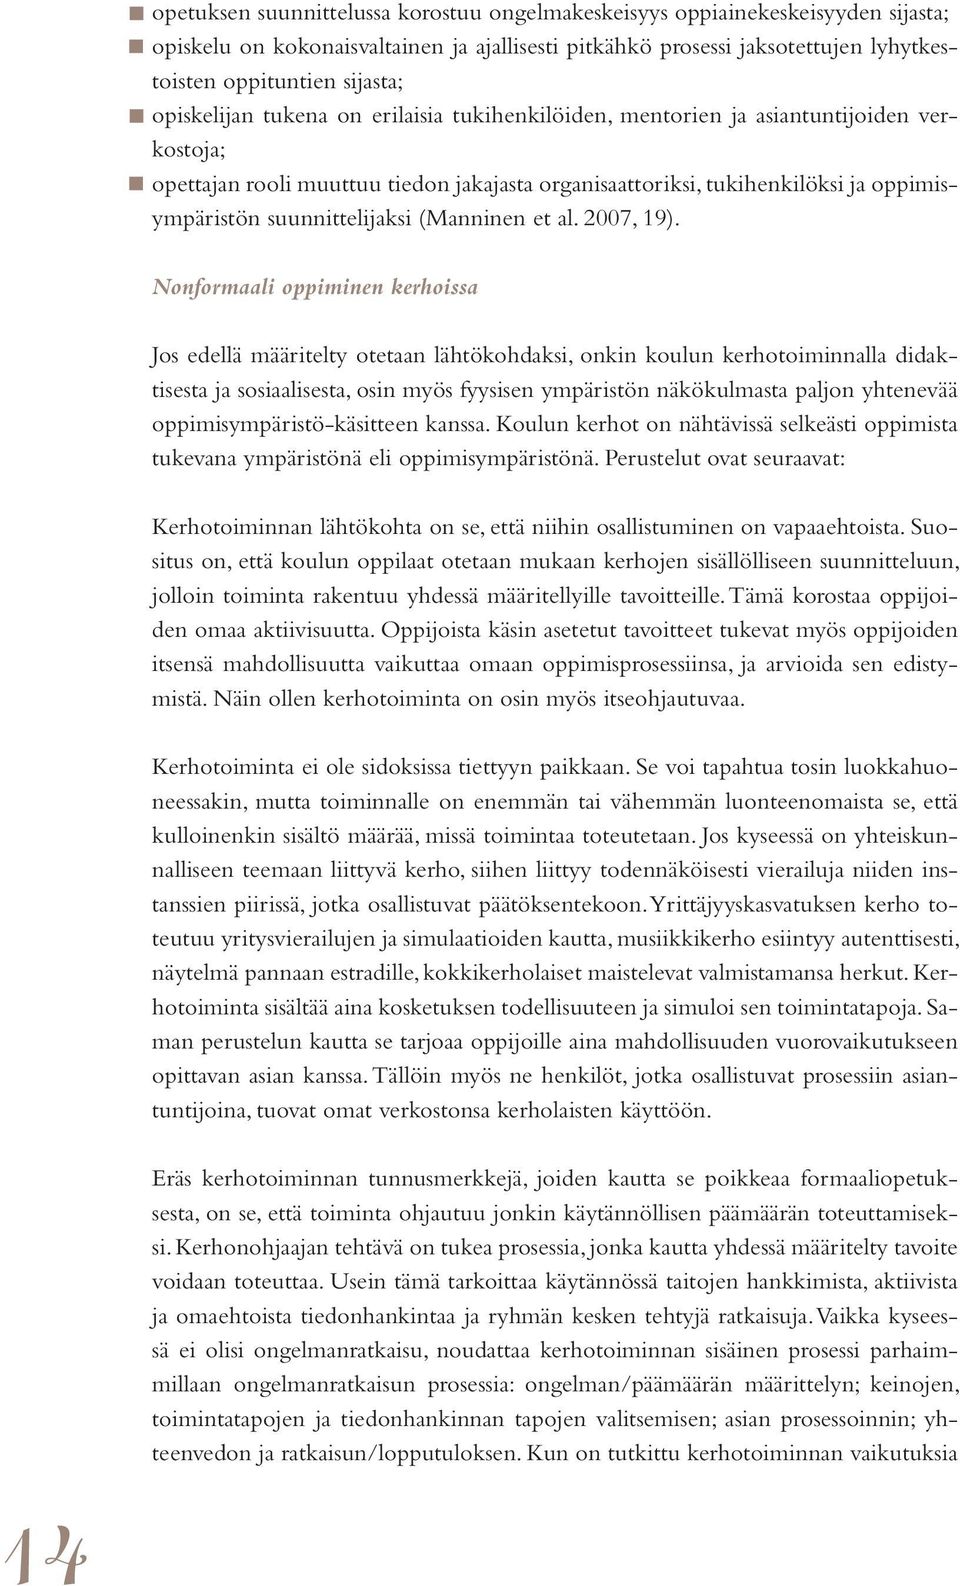 suunnittelijaksi (Manninen et al. 2007, 19).